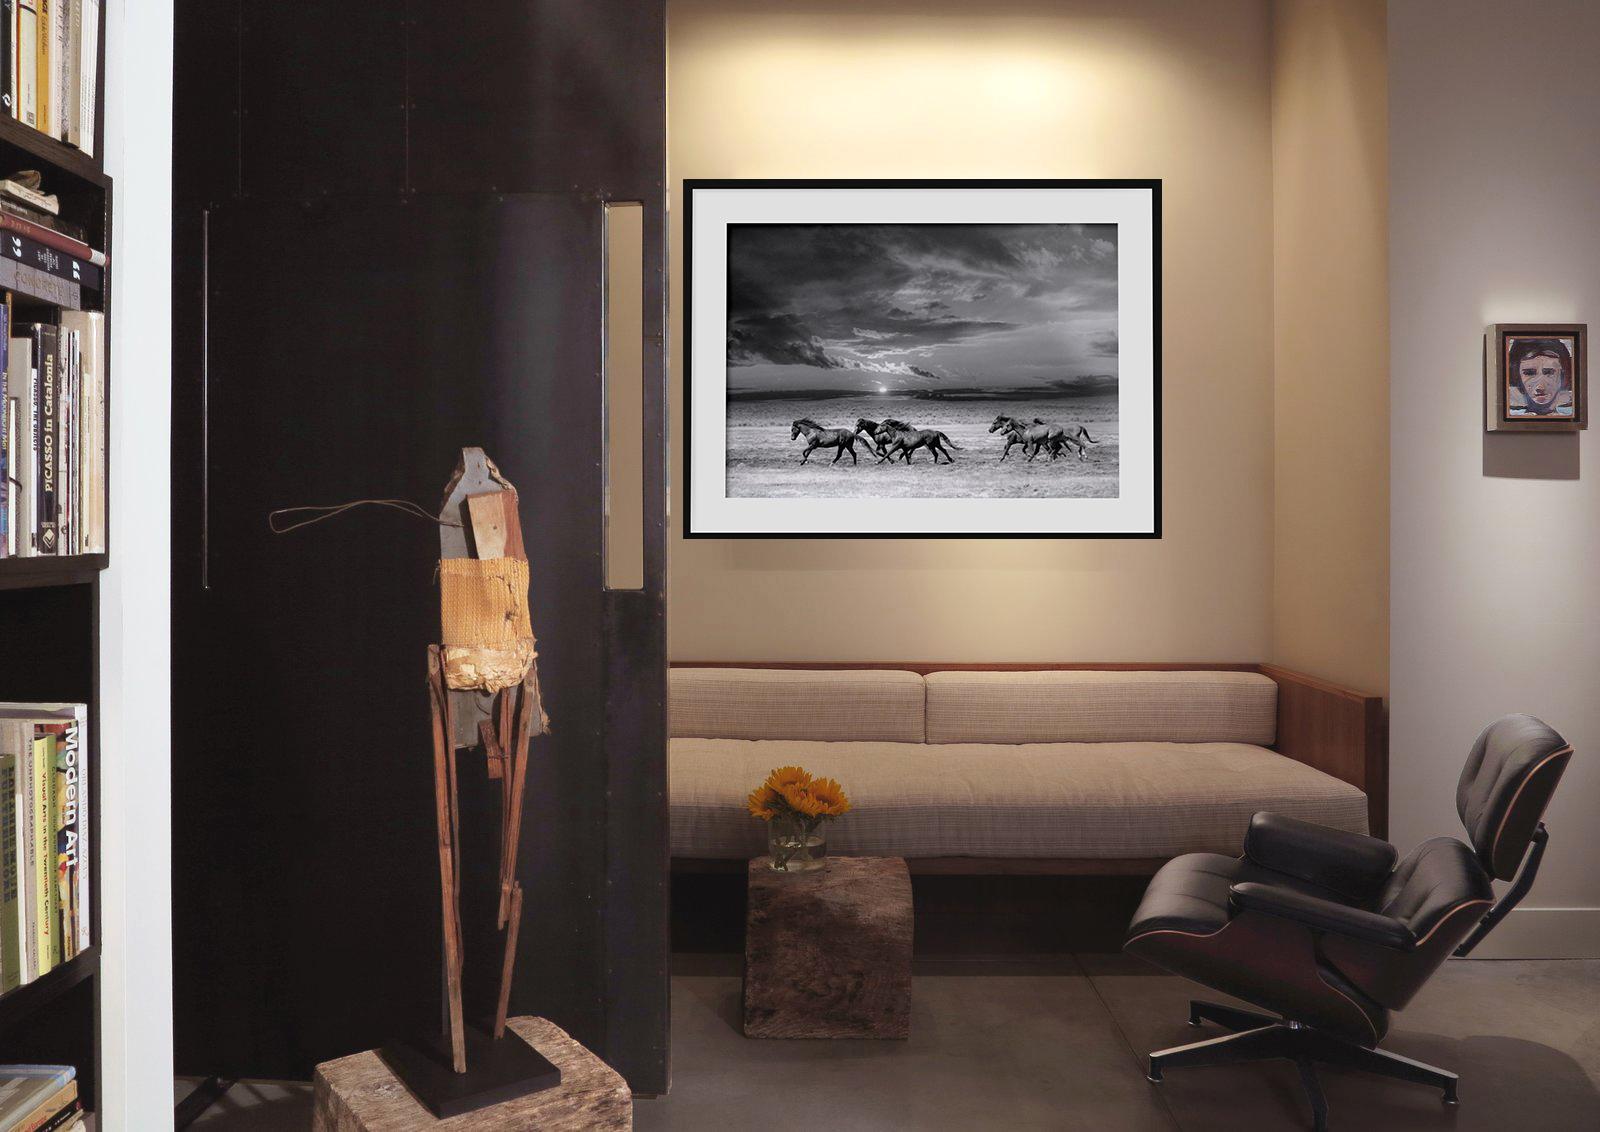 Chasing the Light – 28x40 Schwarz-Weiß-Fotografie mit Wildpferden, Senf, signiert 3